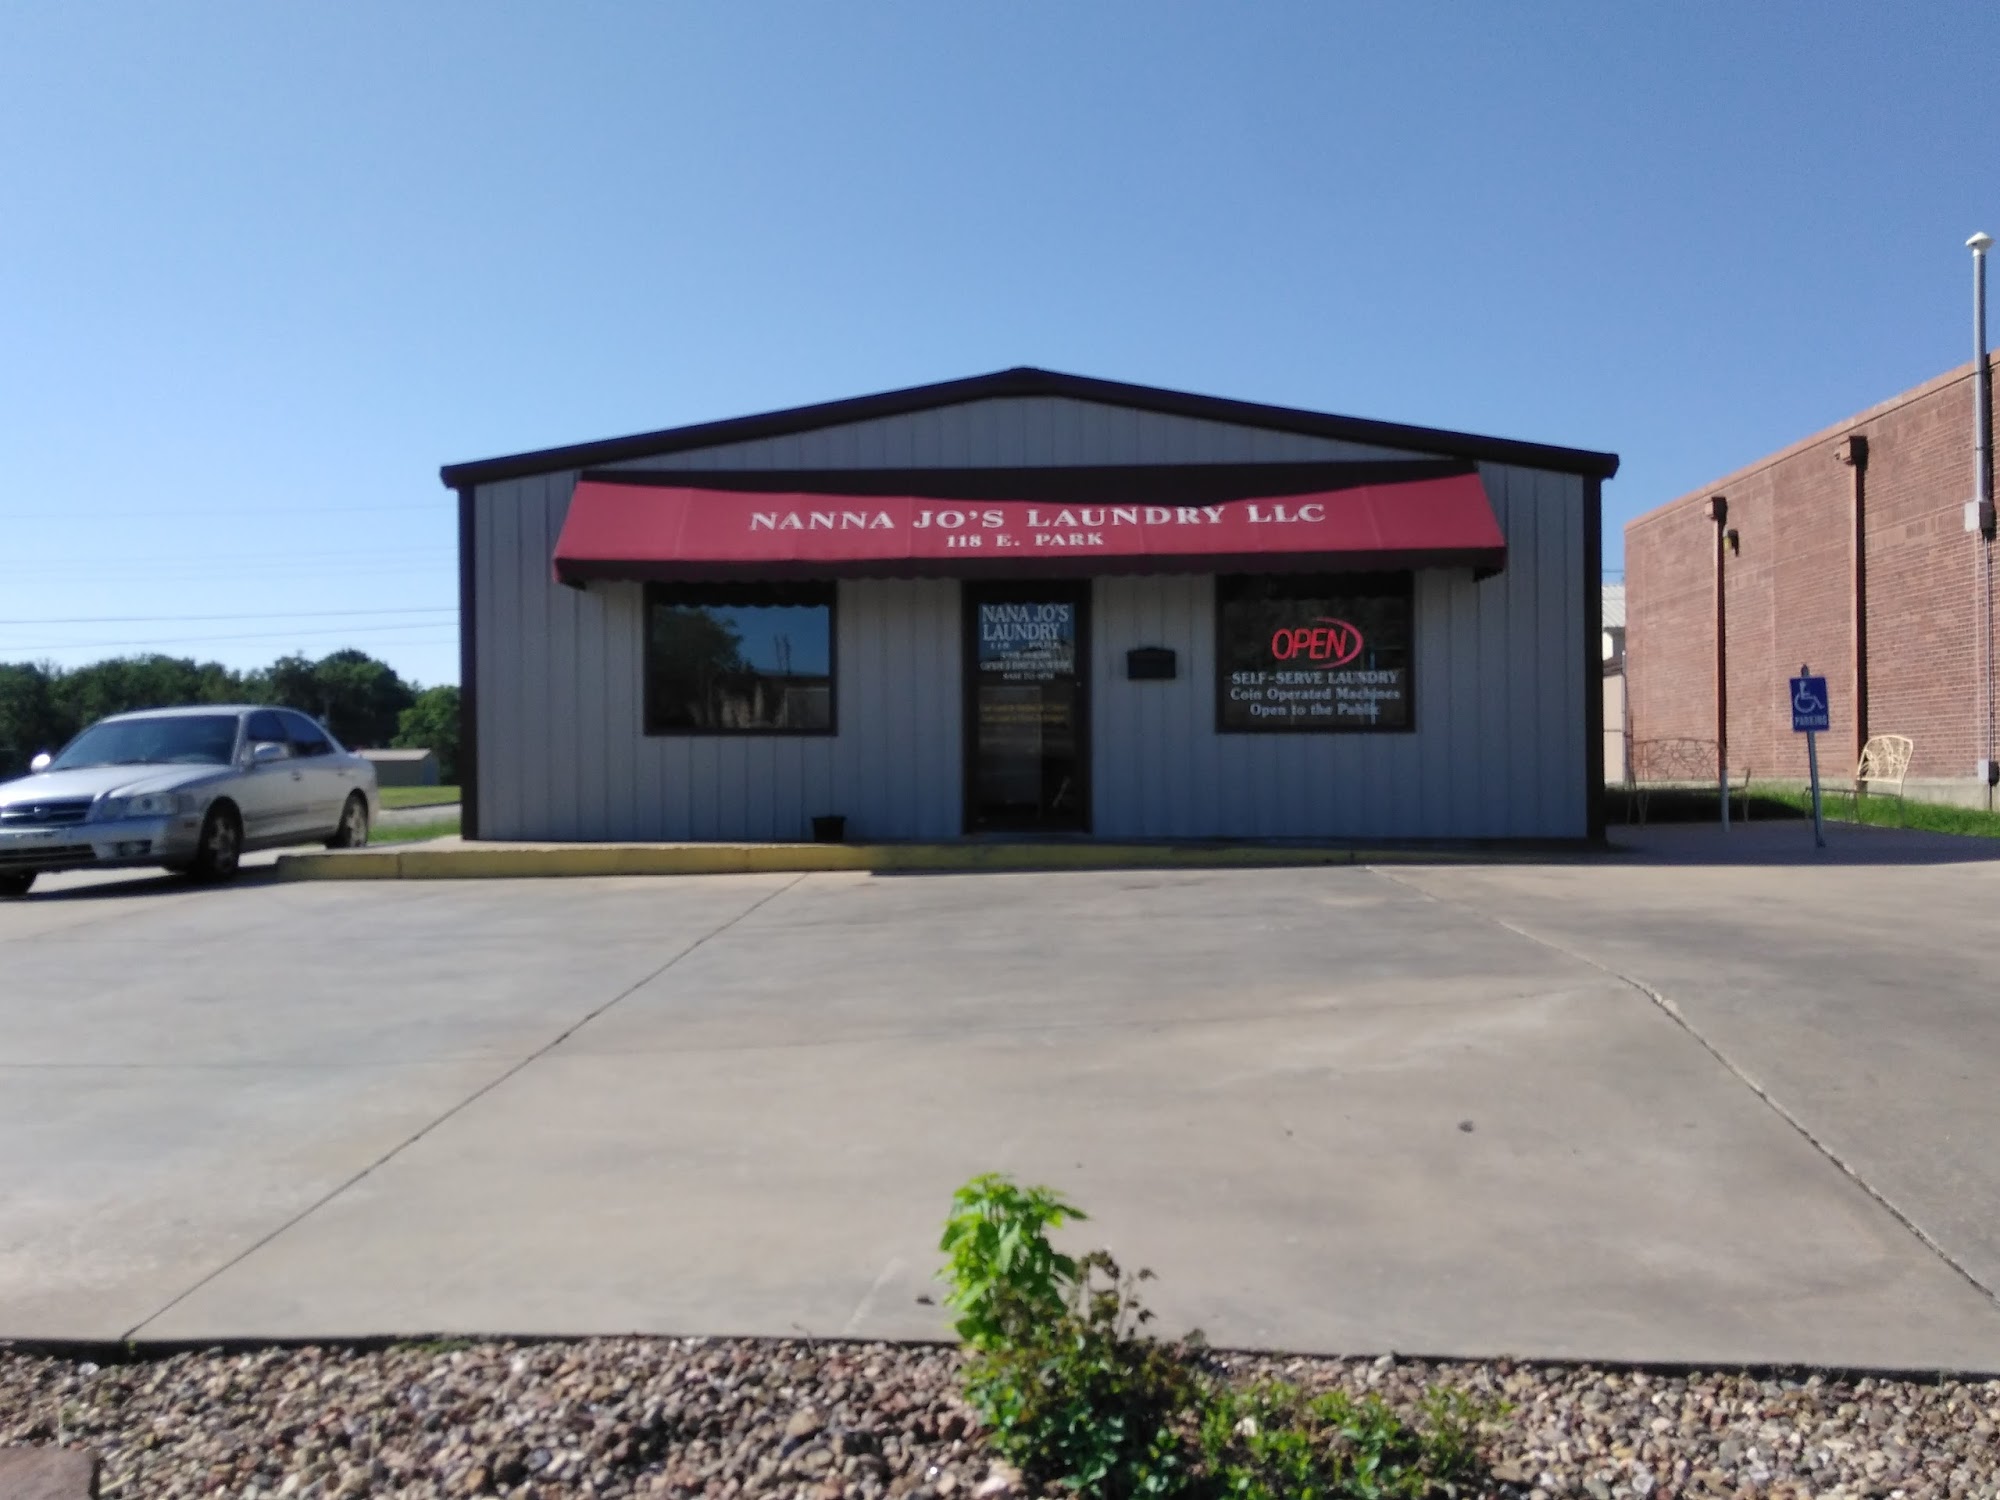 Nanna Jo's Laundry LLC 118 E Park St, Tecumseh Oklahoma 74873